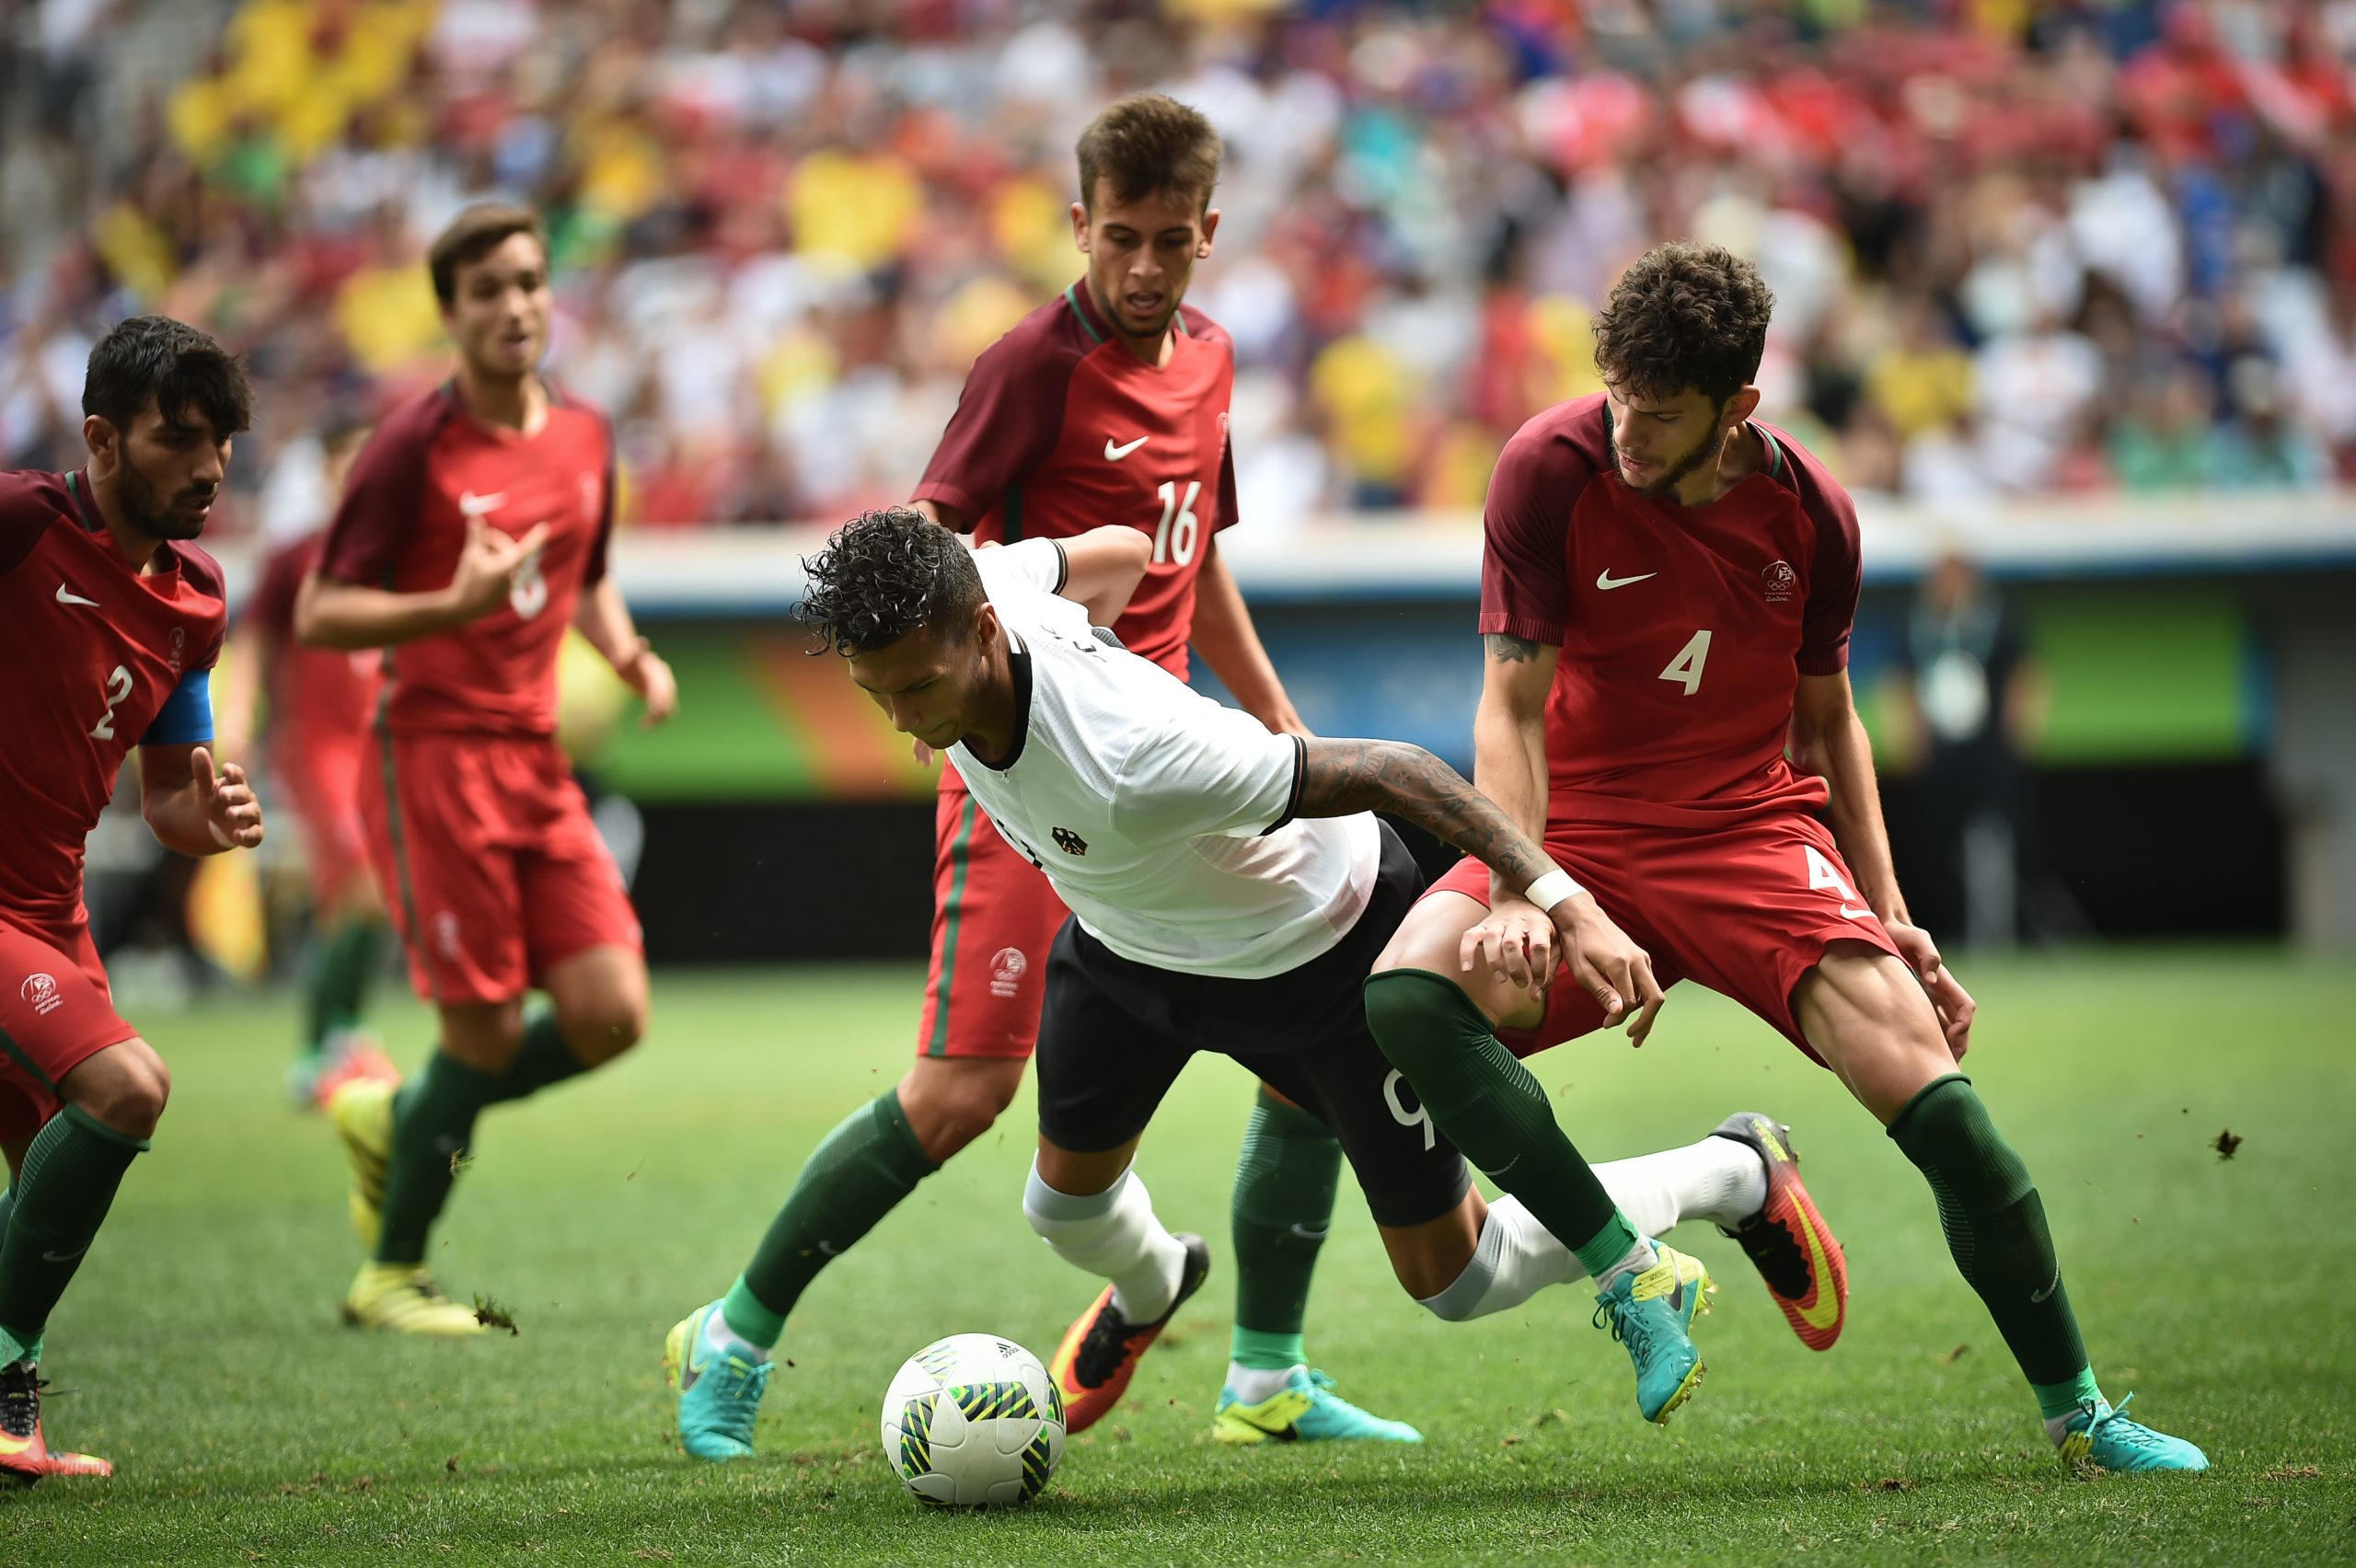 Futebol em Portugal: Muito além de um desporto